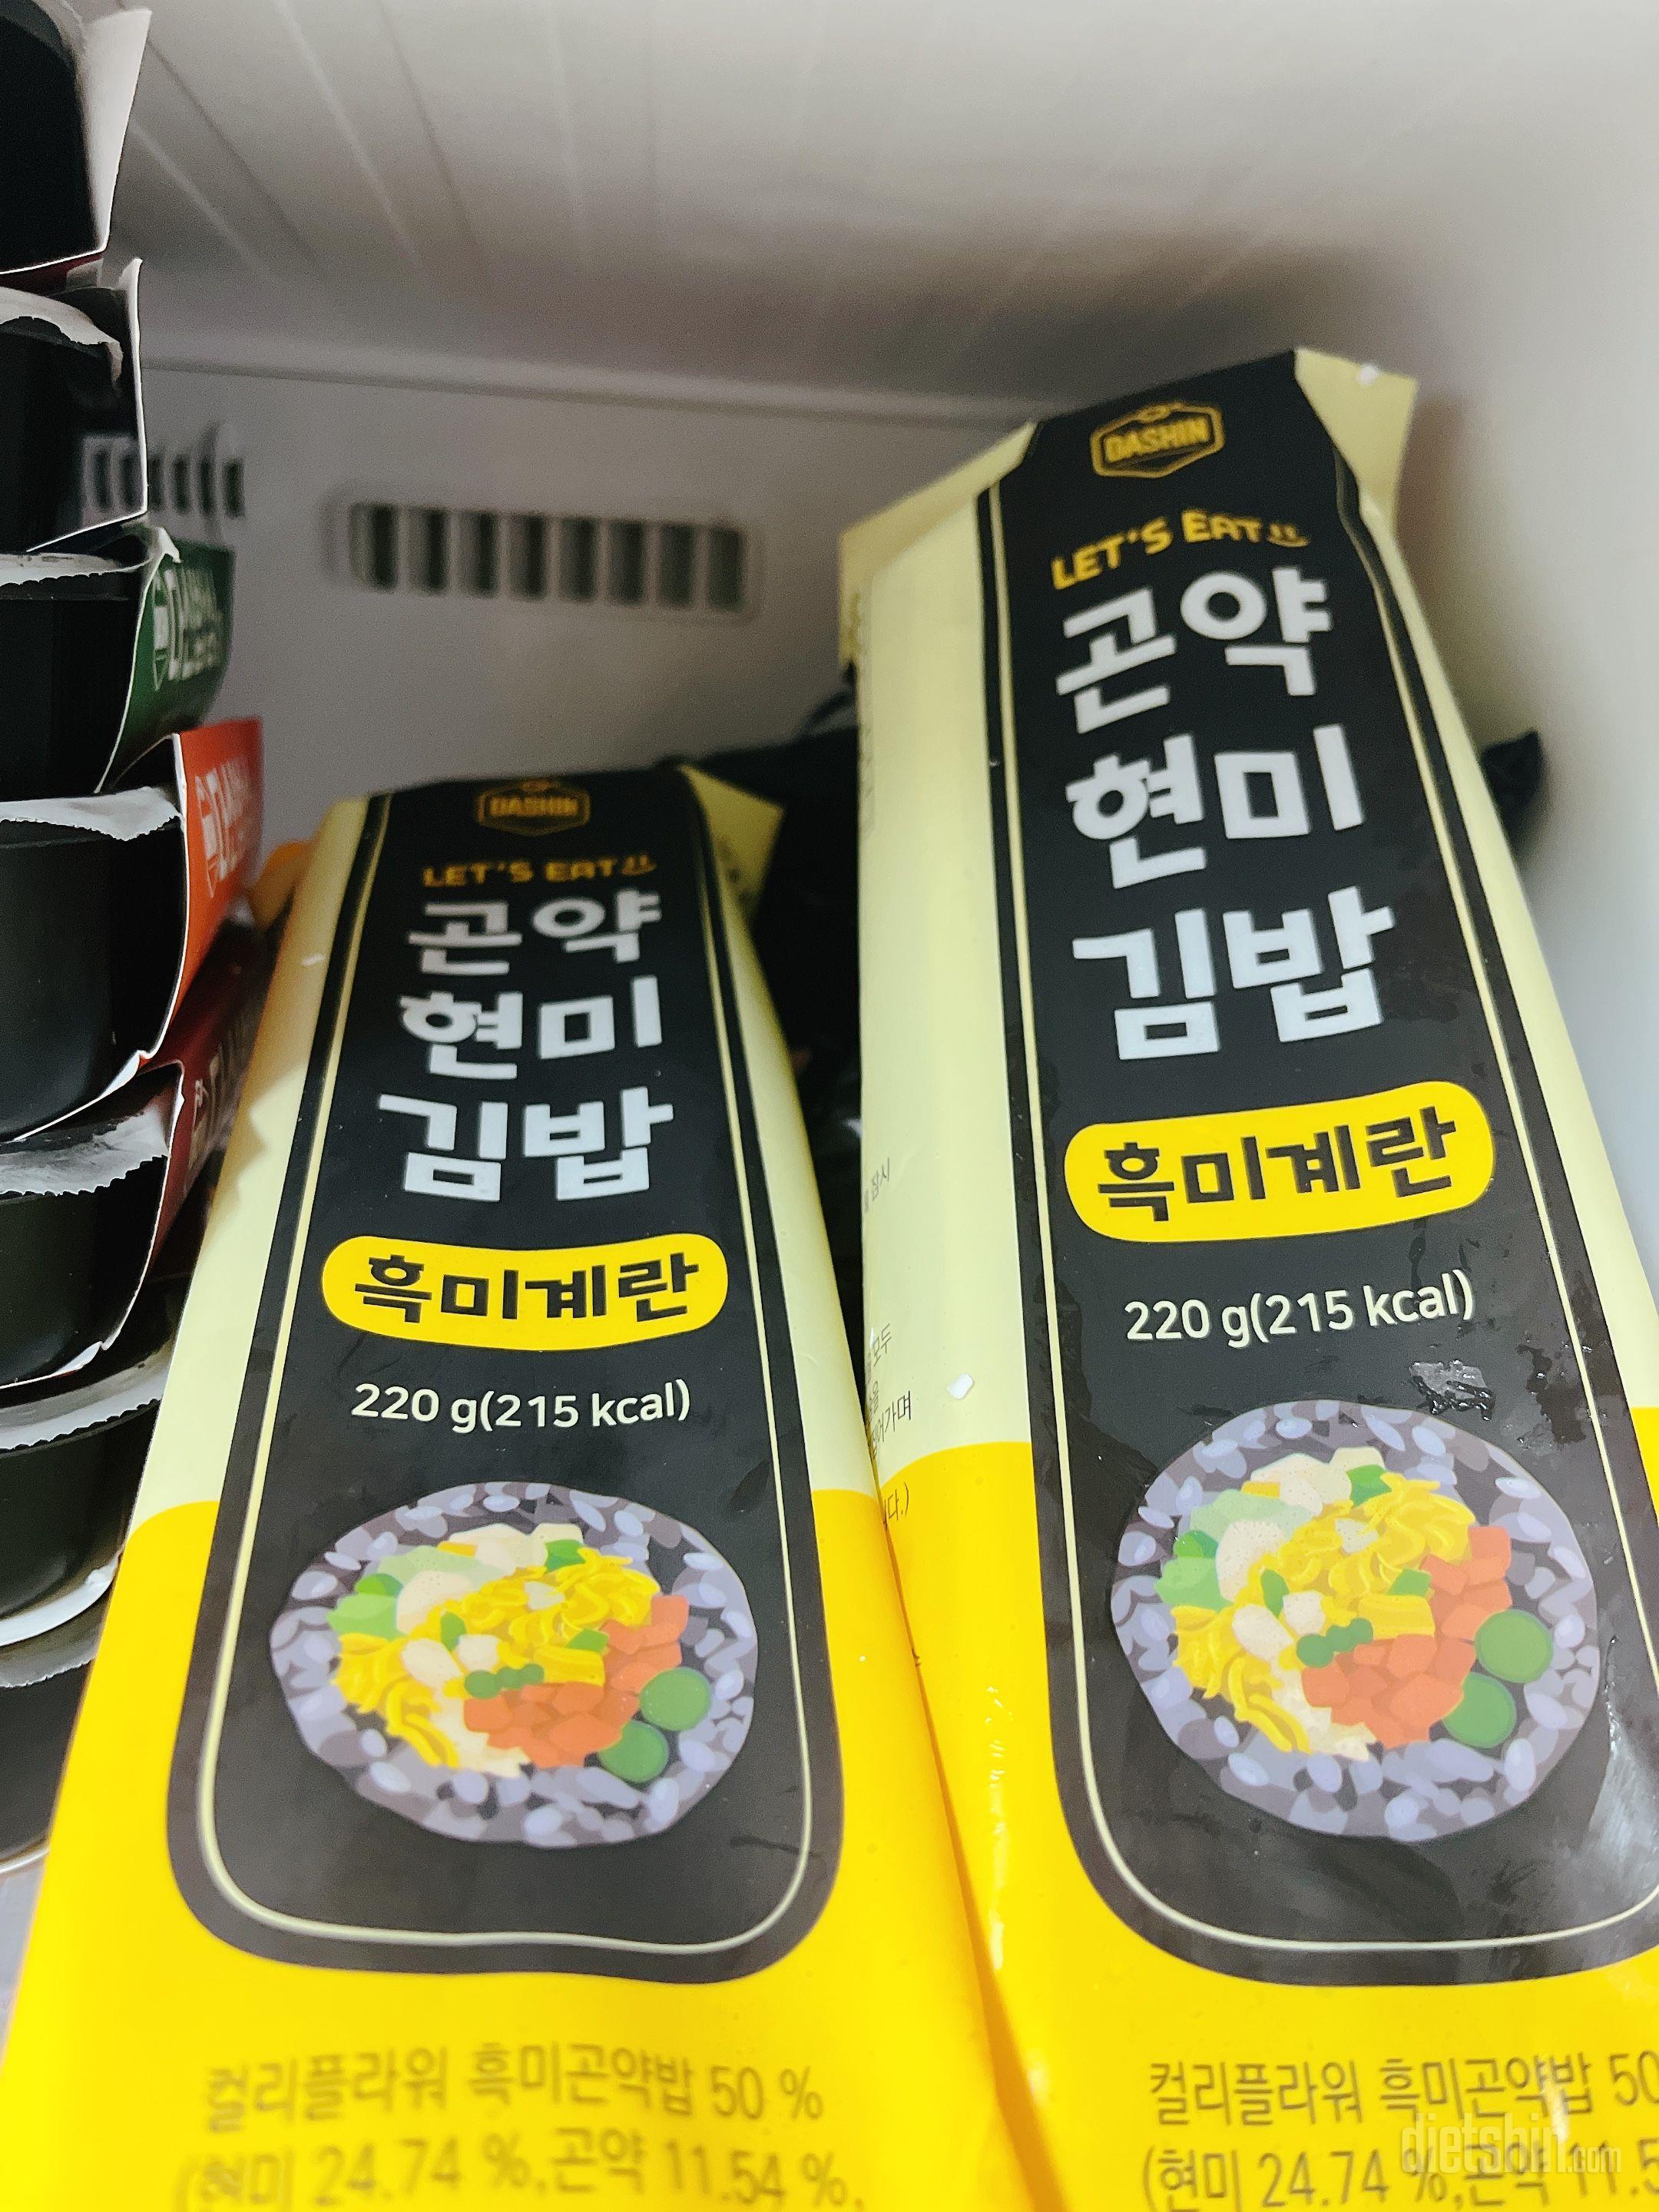 김밥 좋아하는데 너무 맛있어요 다른맛